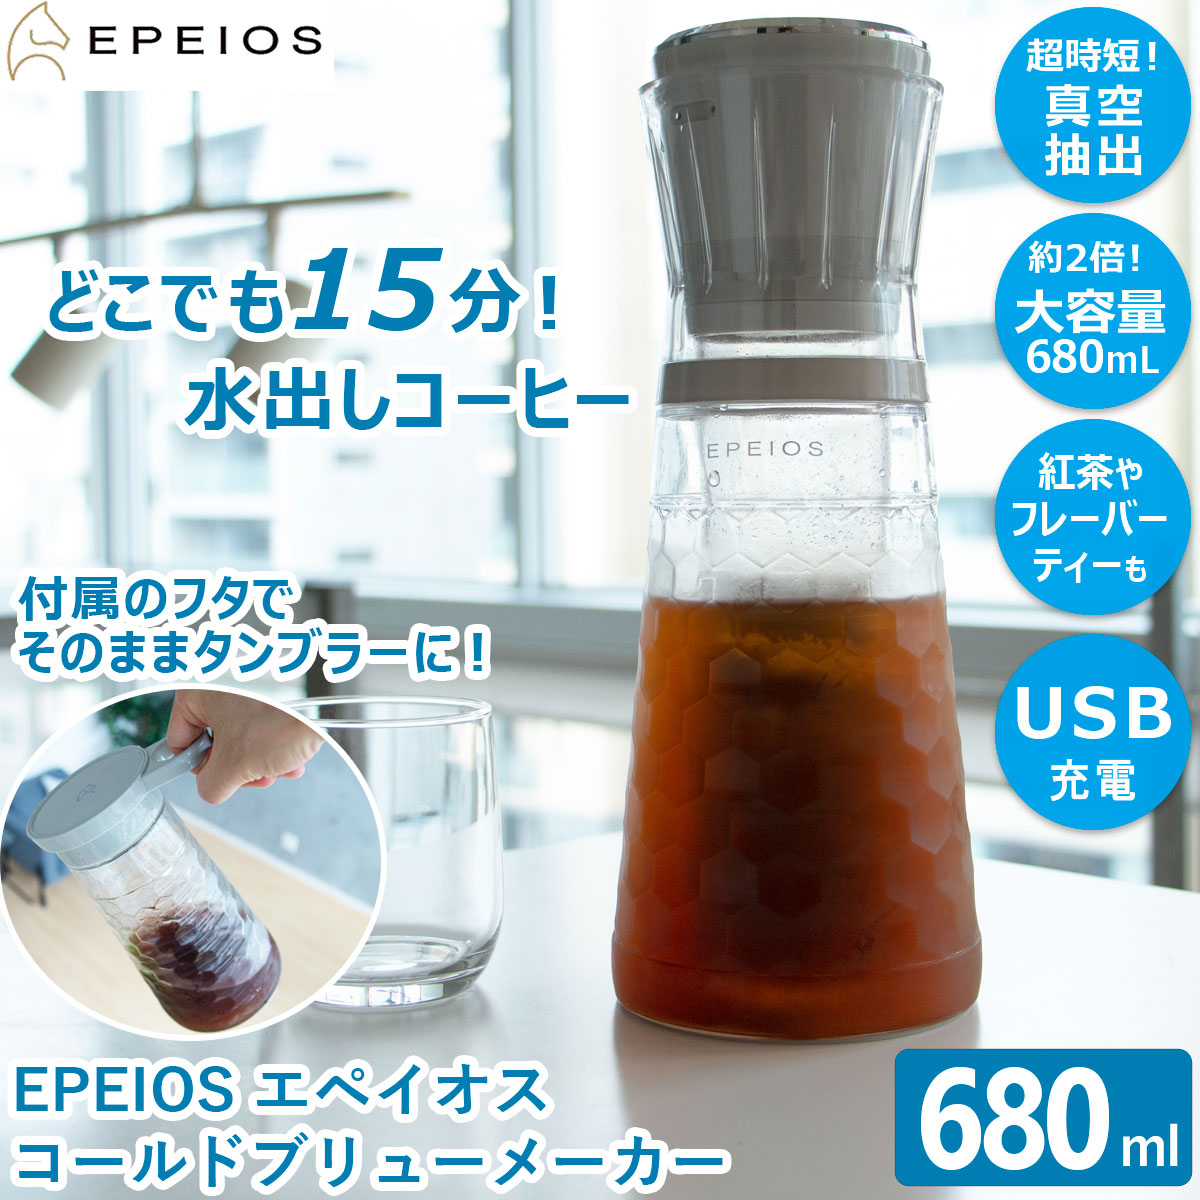 EPEIOS コールドブリューメーカー 680ml 水出しポット 水出しコーヒー